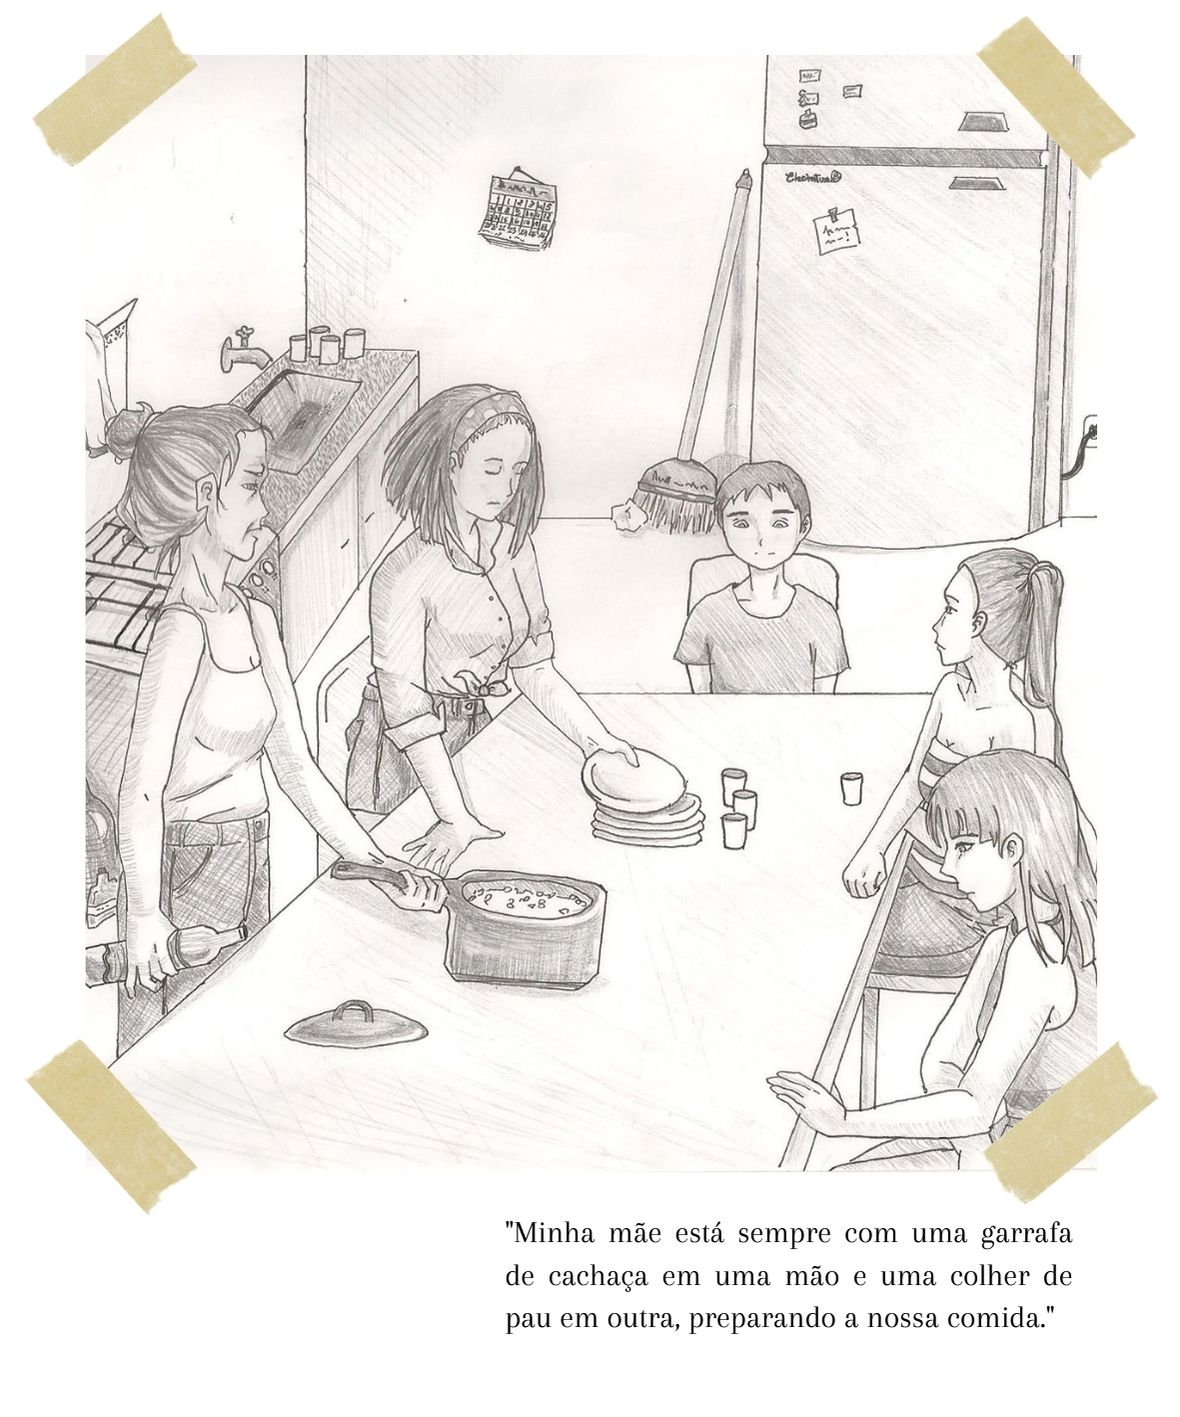 Ilustração do livro "Sr. Villela". a mãe coloca uma panela na mesa, com uma garrada de cachaça na mão. Duas crianças estão do outro lado da mesa, o personagem principal na ponta, e irmã mais velha ao lado da mãe, distribuindo os pratos.